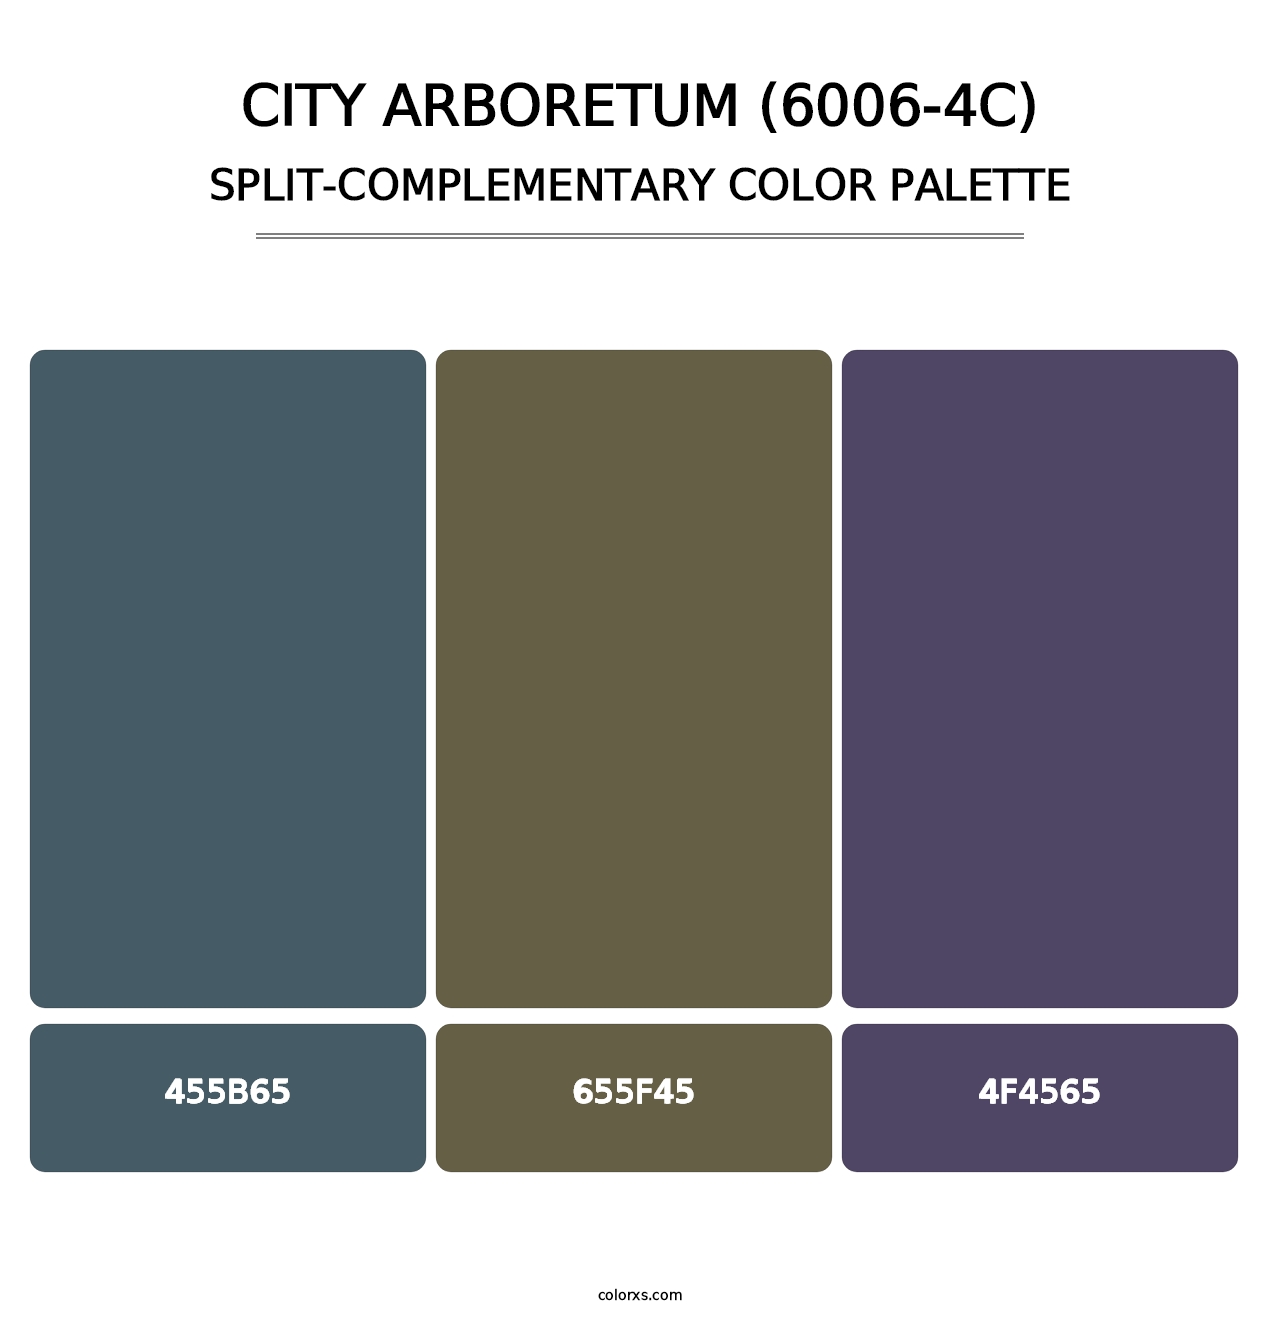 City Arboretum (6006-4C) - Split-Complementary Color Palette